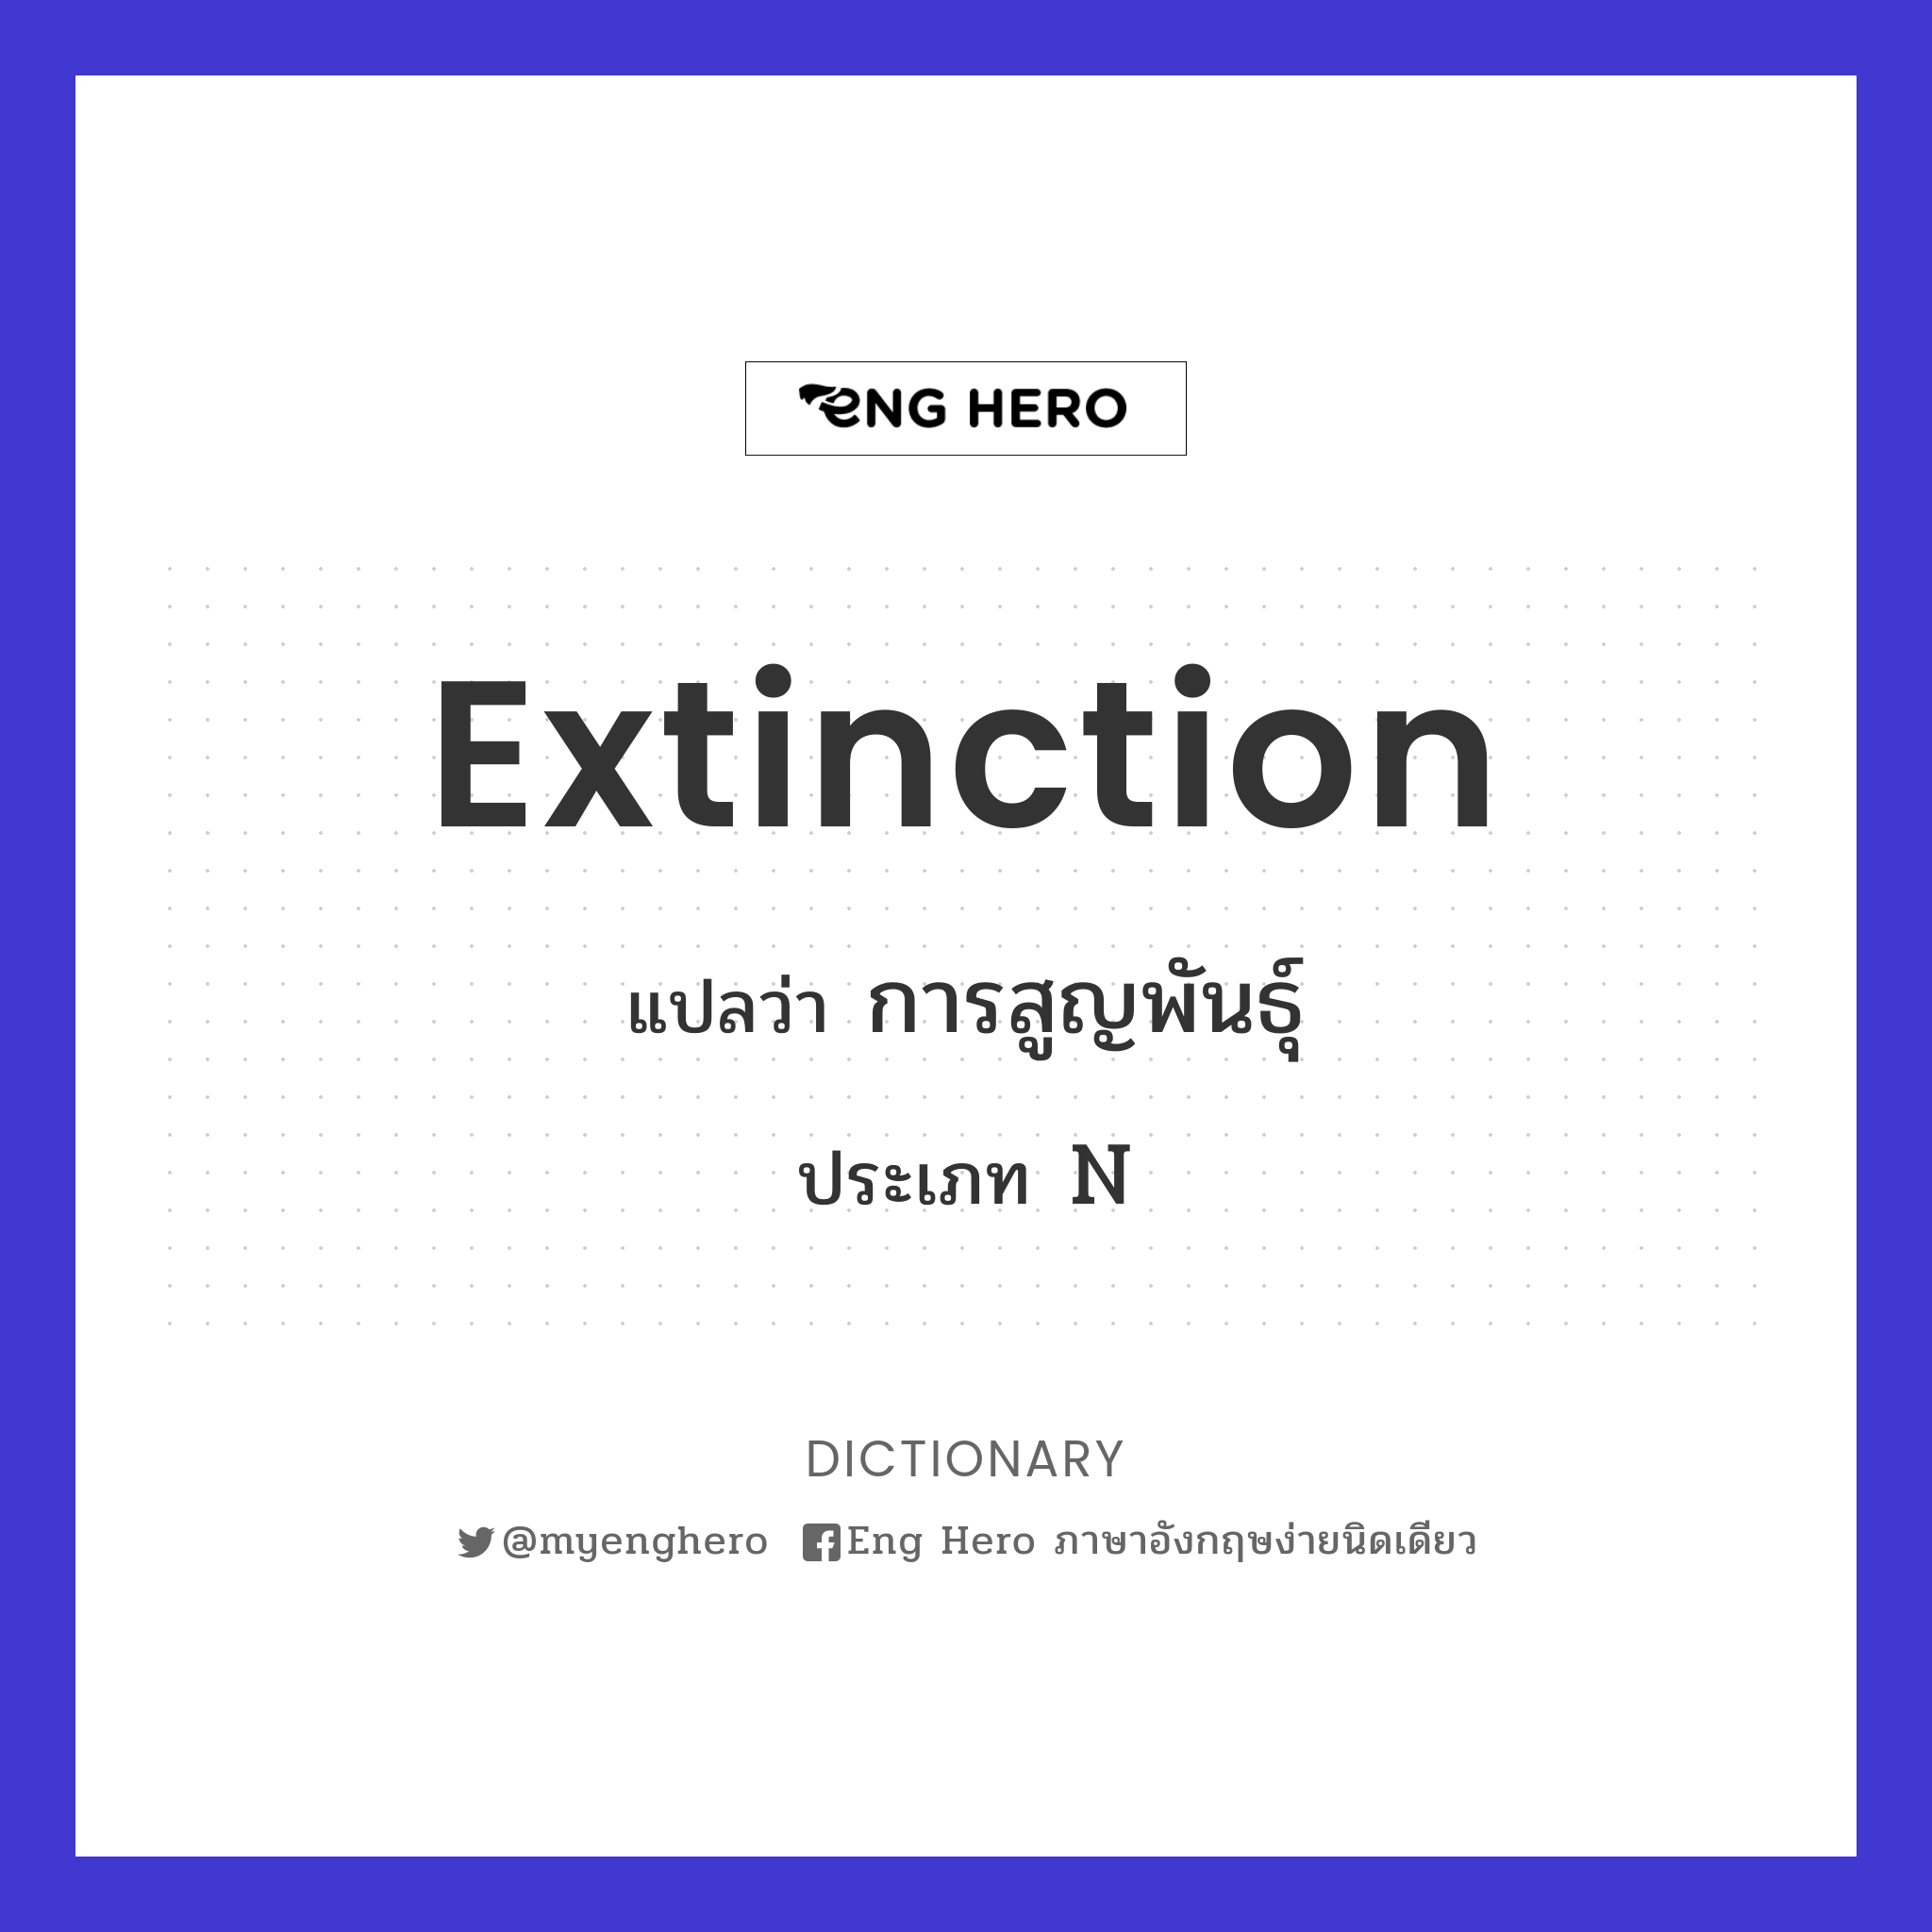 extinction